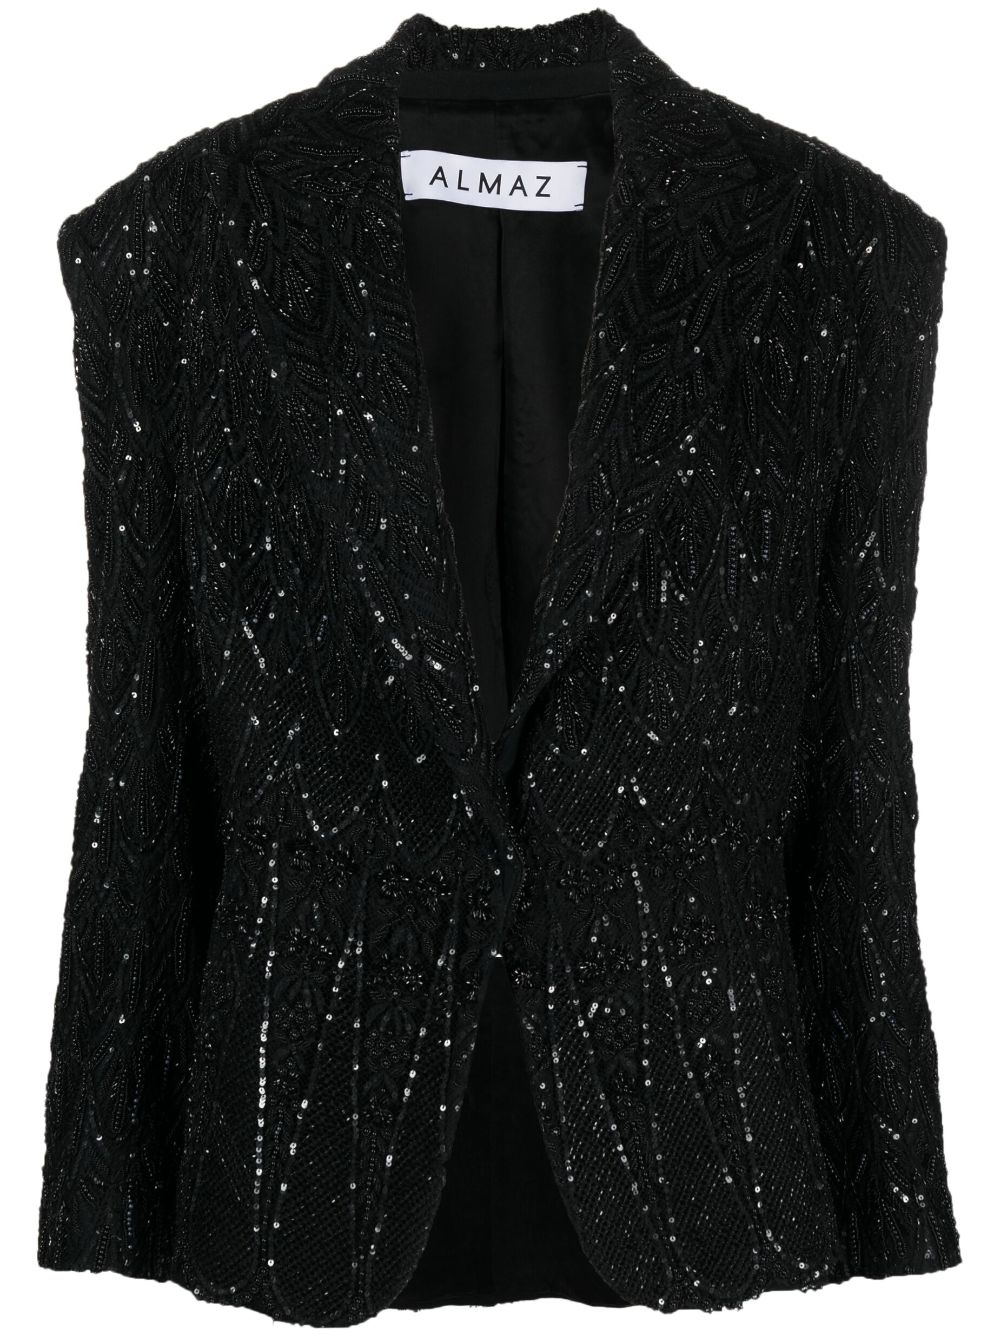 Almaz Spotlight single-breasted blazer - Black von Almaz